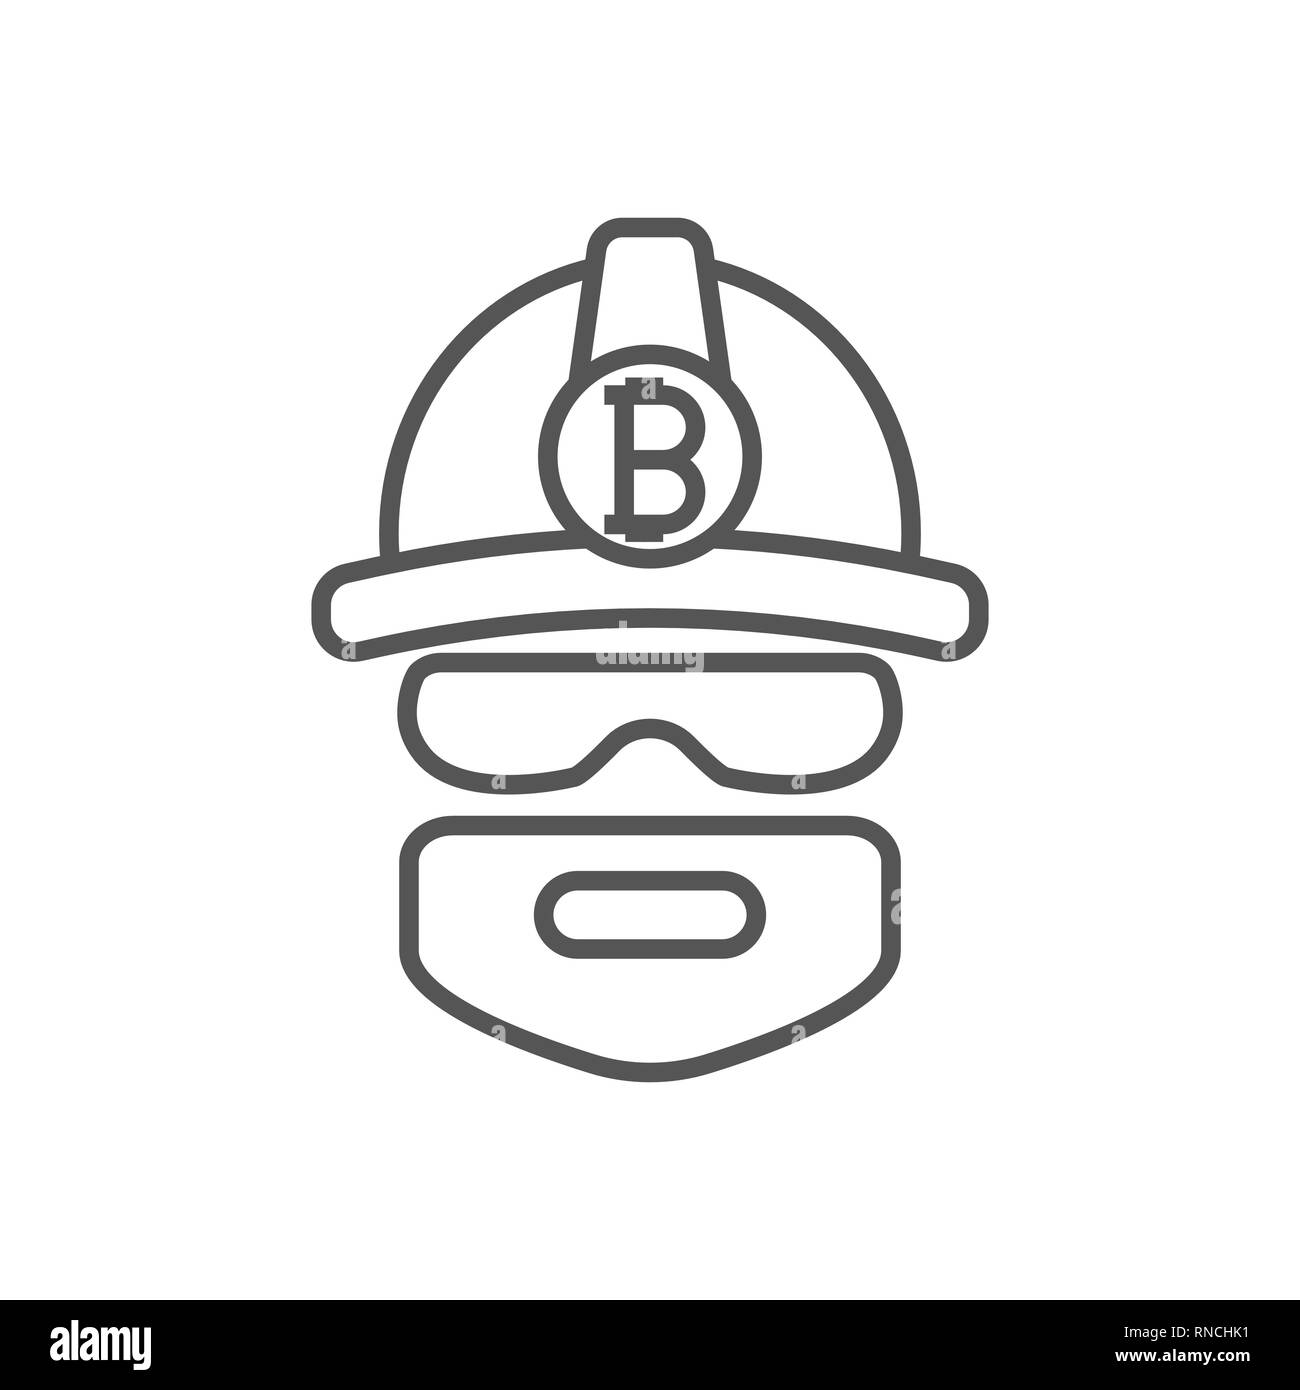 L'extraction minière Bitcoin bitcoins. Logo mineur. Bitcoin minière Devises Crypto. Vector illustration. Course modifiable Illustration de Vecteur